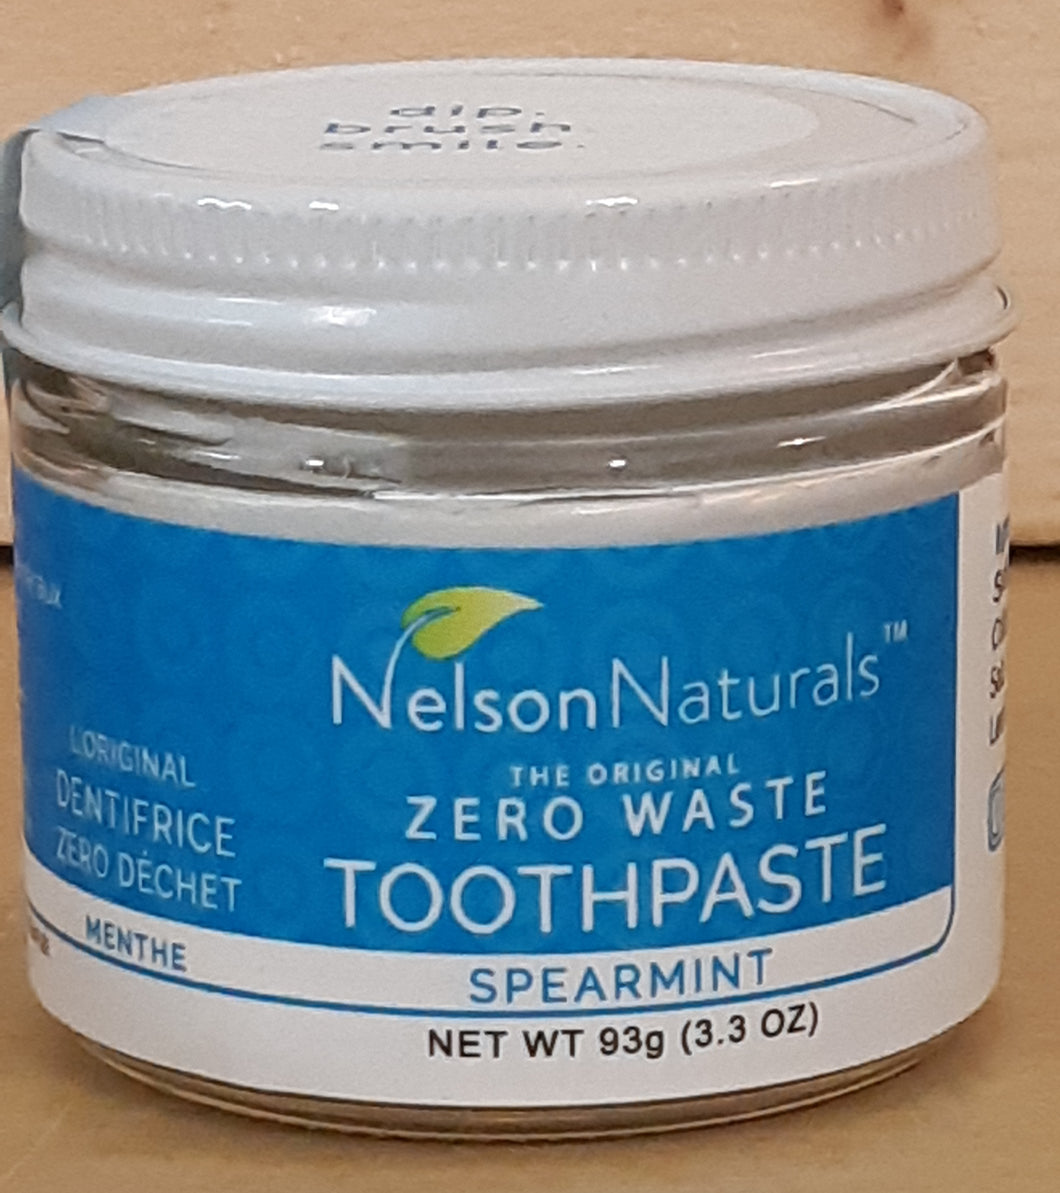 Zero waste toothpaste spearmint